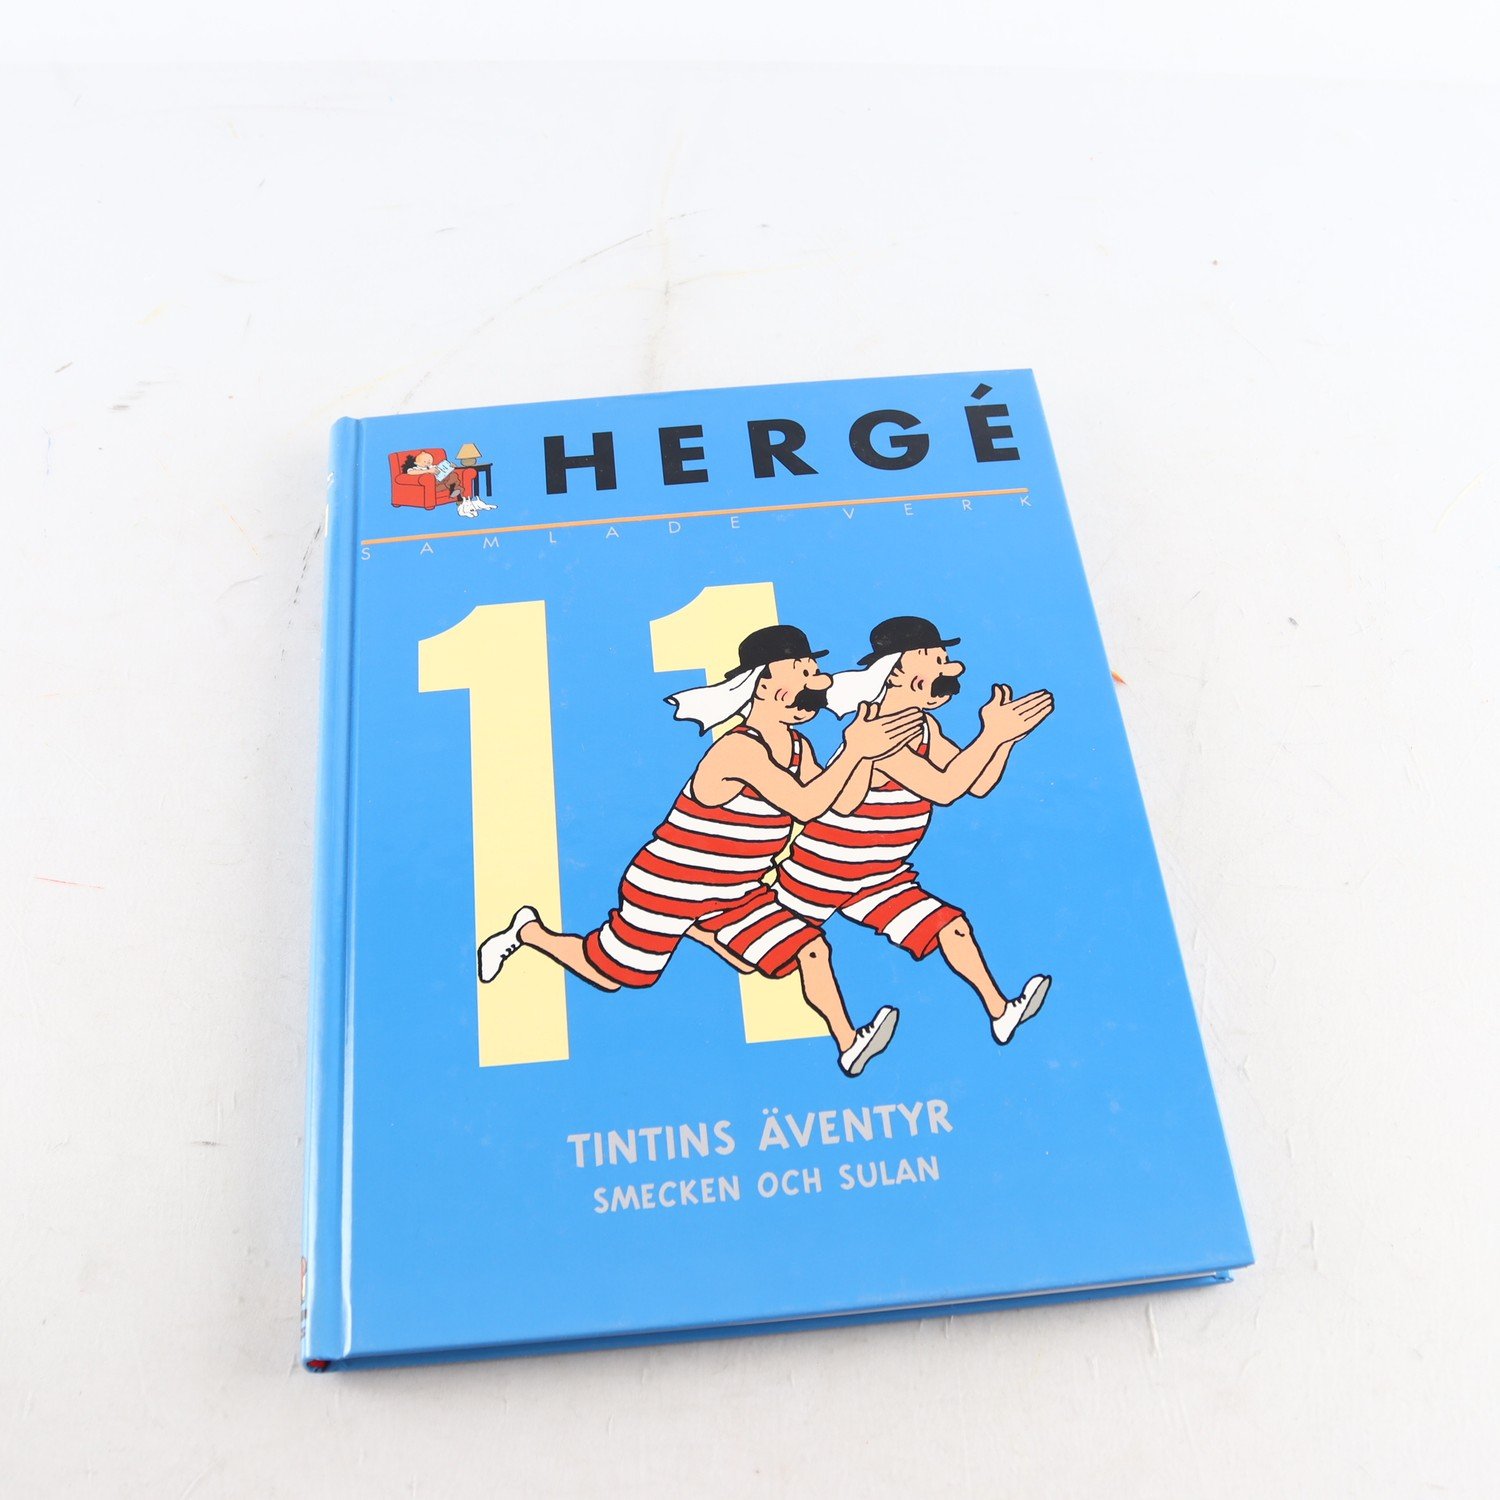 Hergé, Samlade verk, Vol. 11, Tintins äventyr, Smecken och Sulan